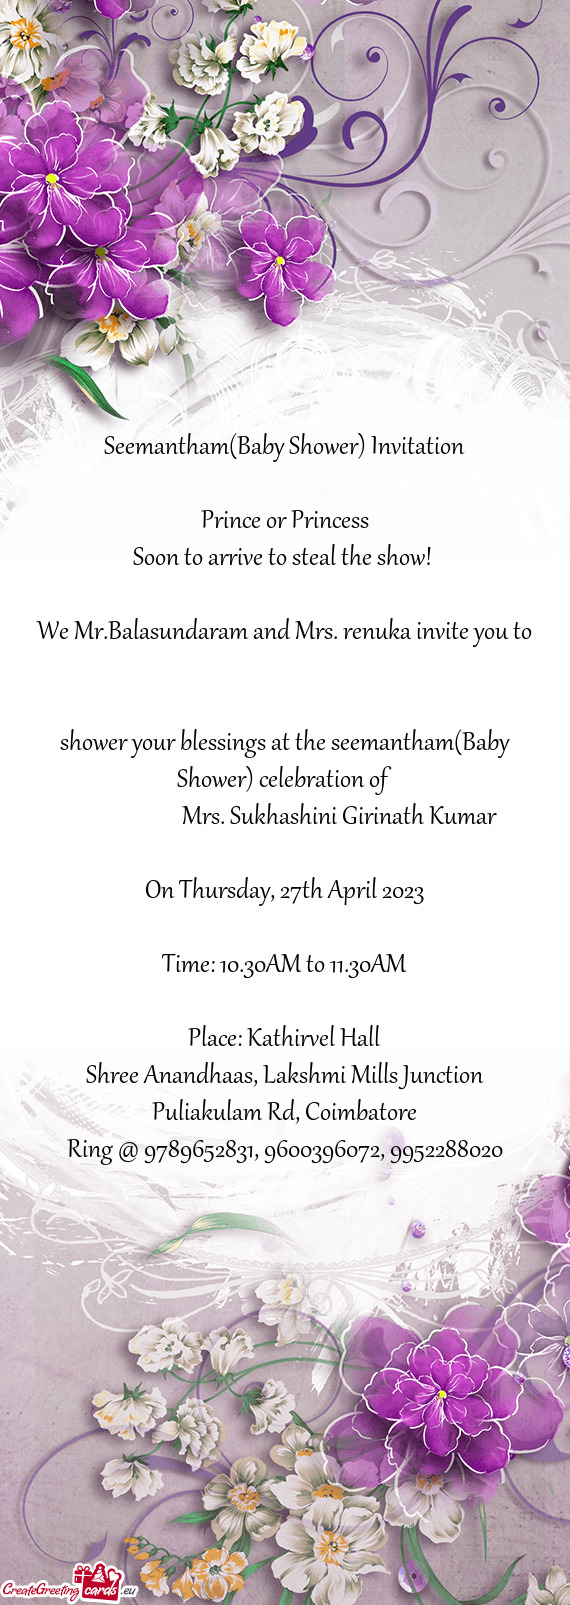 We Mr.Balasundaram and Mrs. renuka invite you to